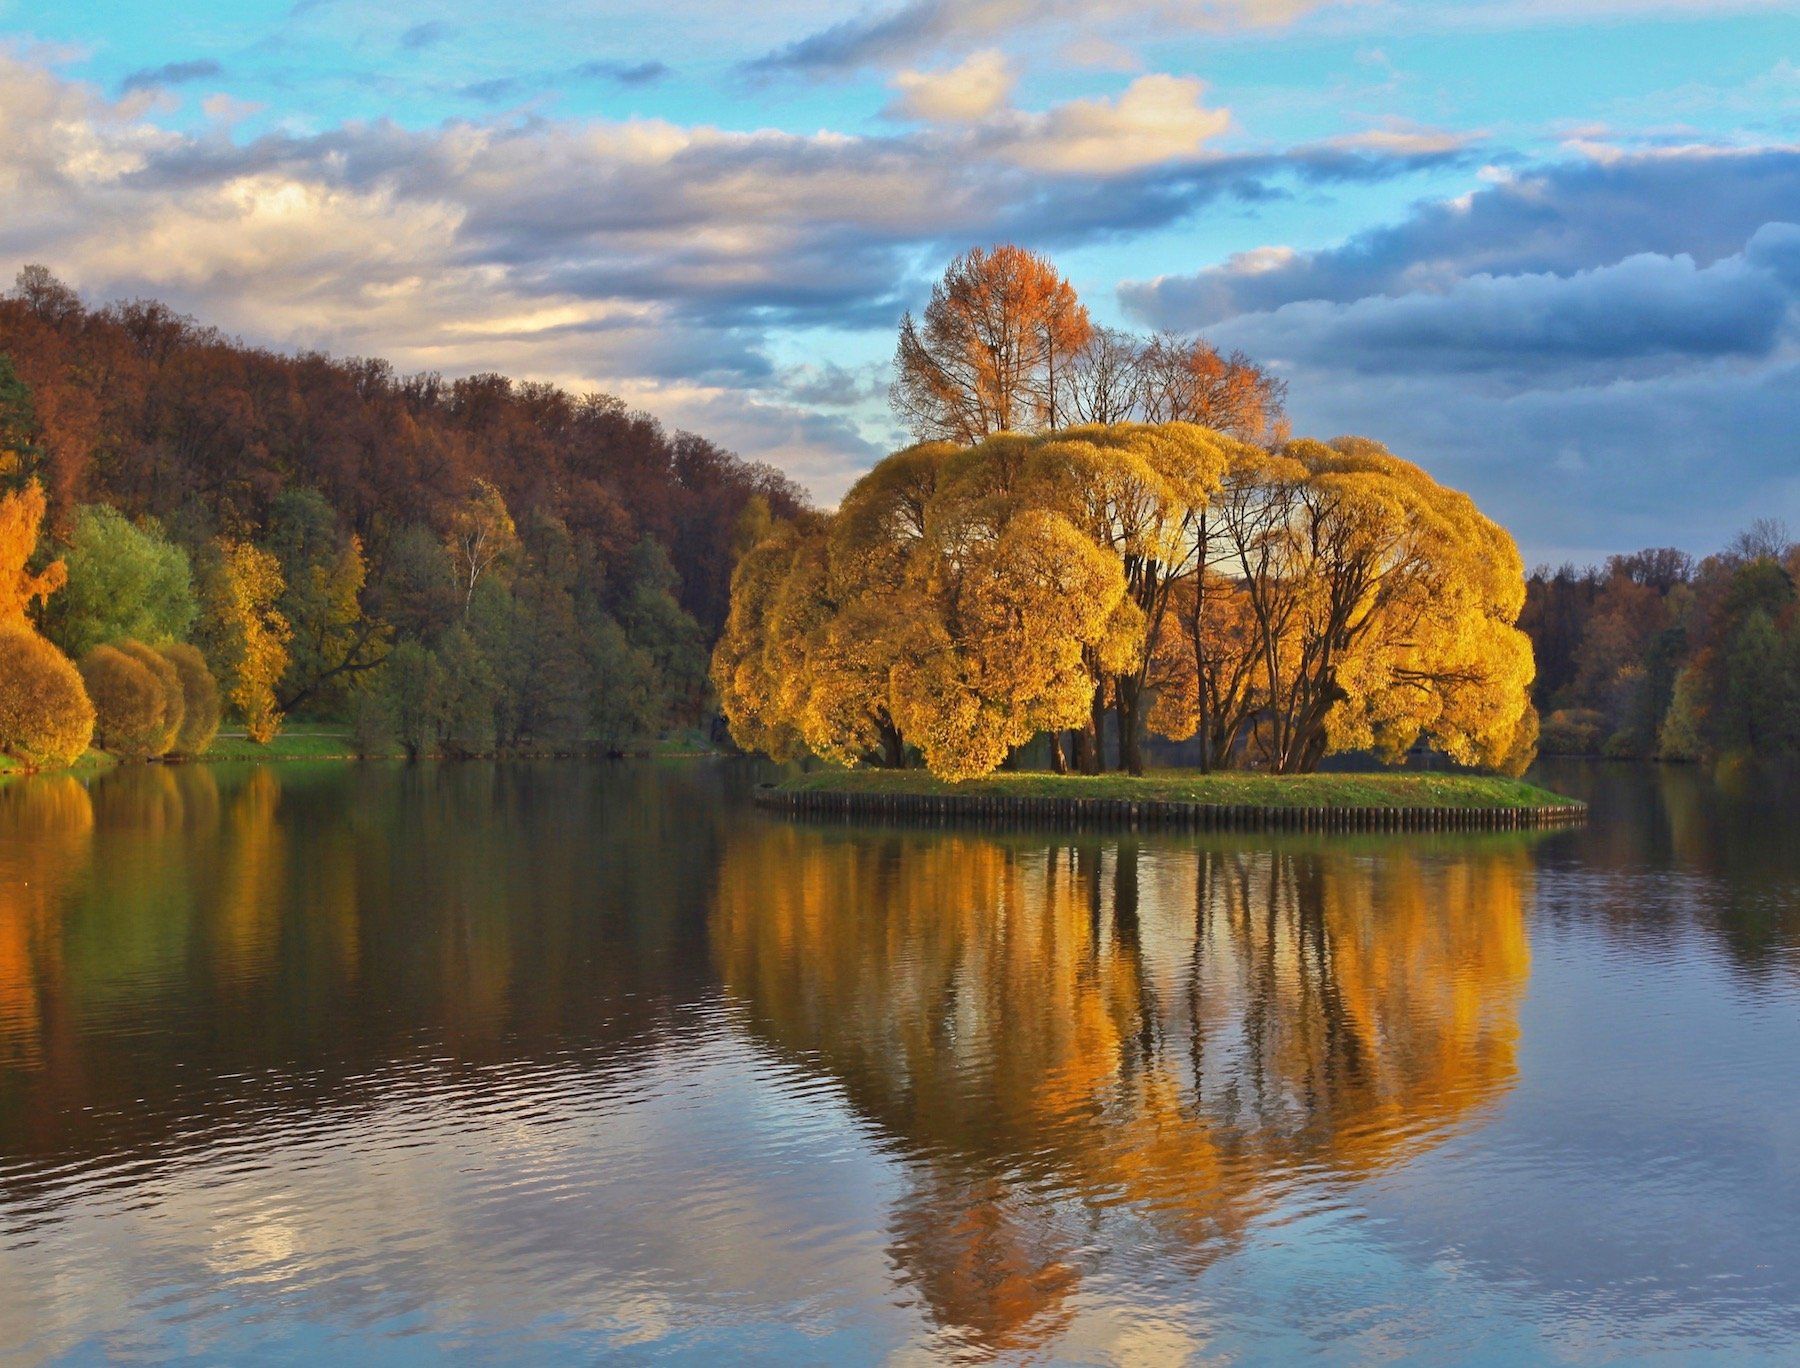 золотая осень, природа, gold autumn, пруд, царицыно, москва, дерево, отражение, reflection, небо, sky, облака, landscape, Julia Kaissa